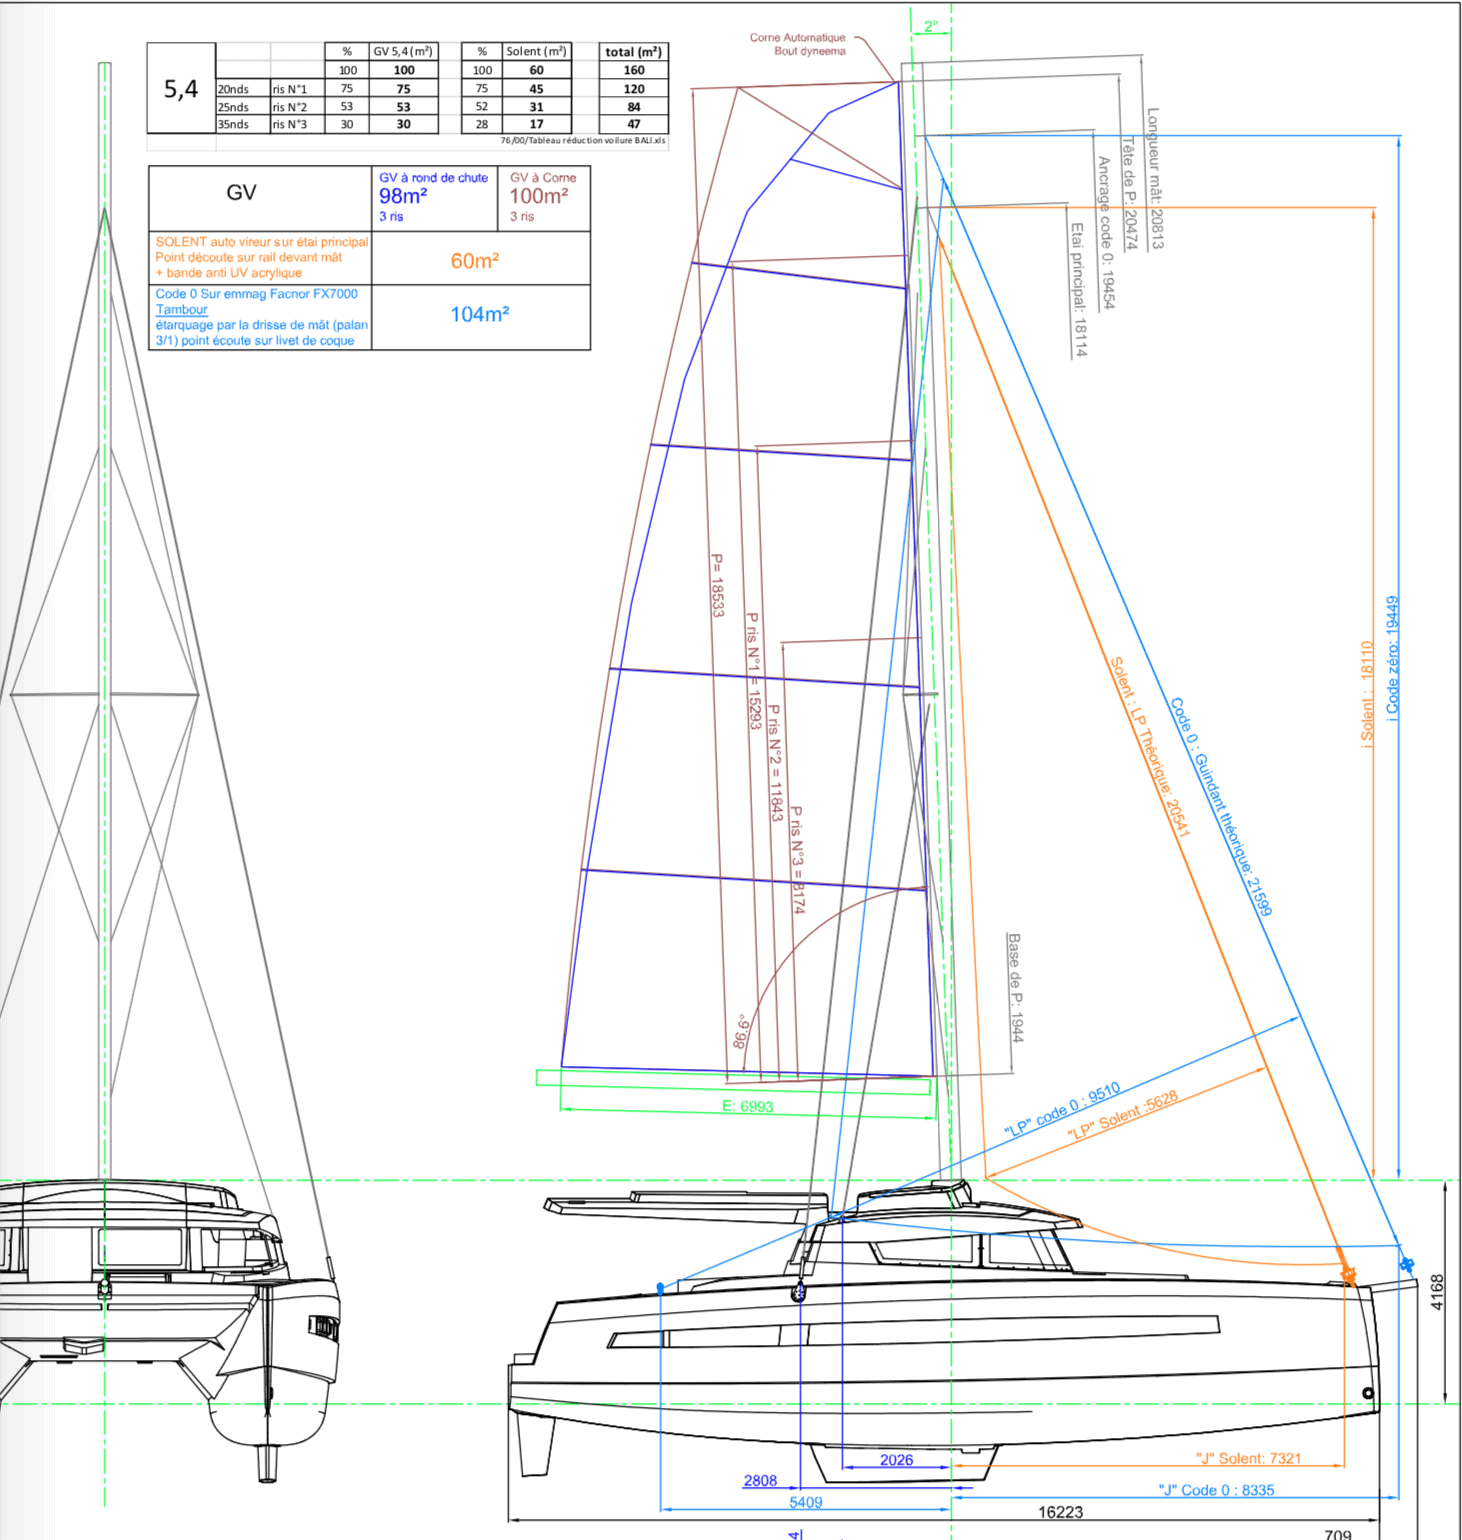 bali 5.4 design schematic for catamaran build at catana shipyard